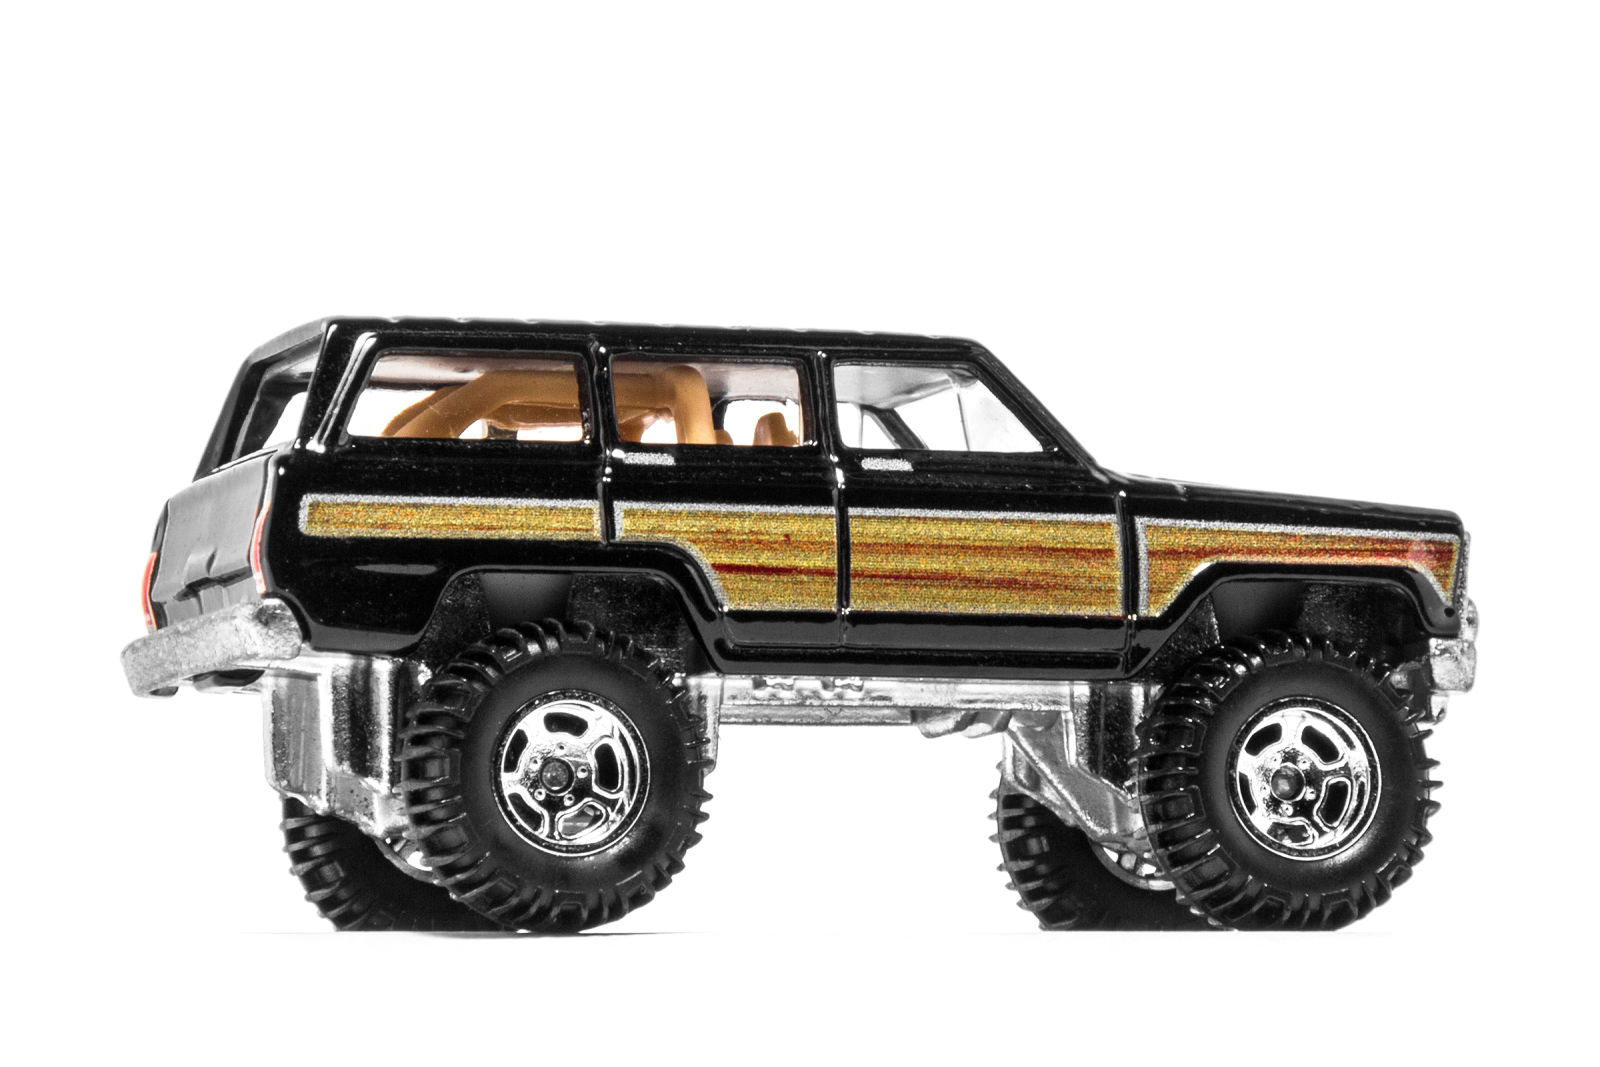 Illustration for article titled Truckin Thursday: ’88 Jeep Wagoneerem/em